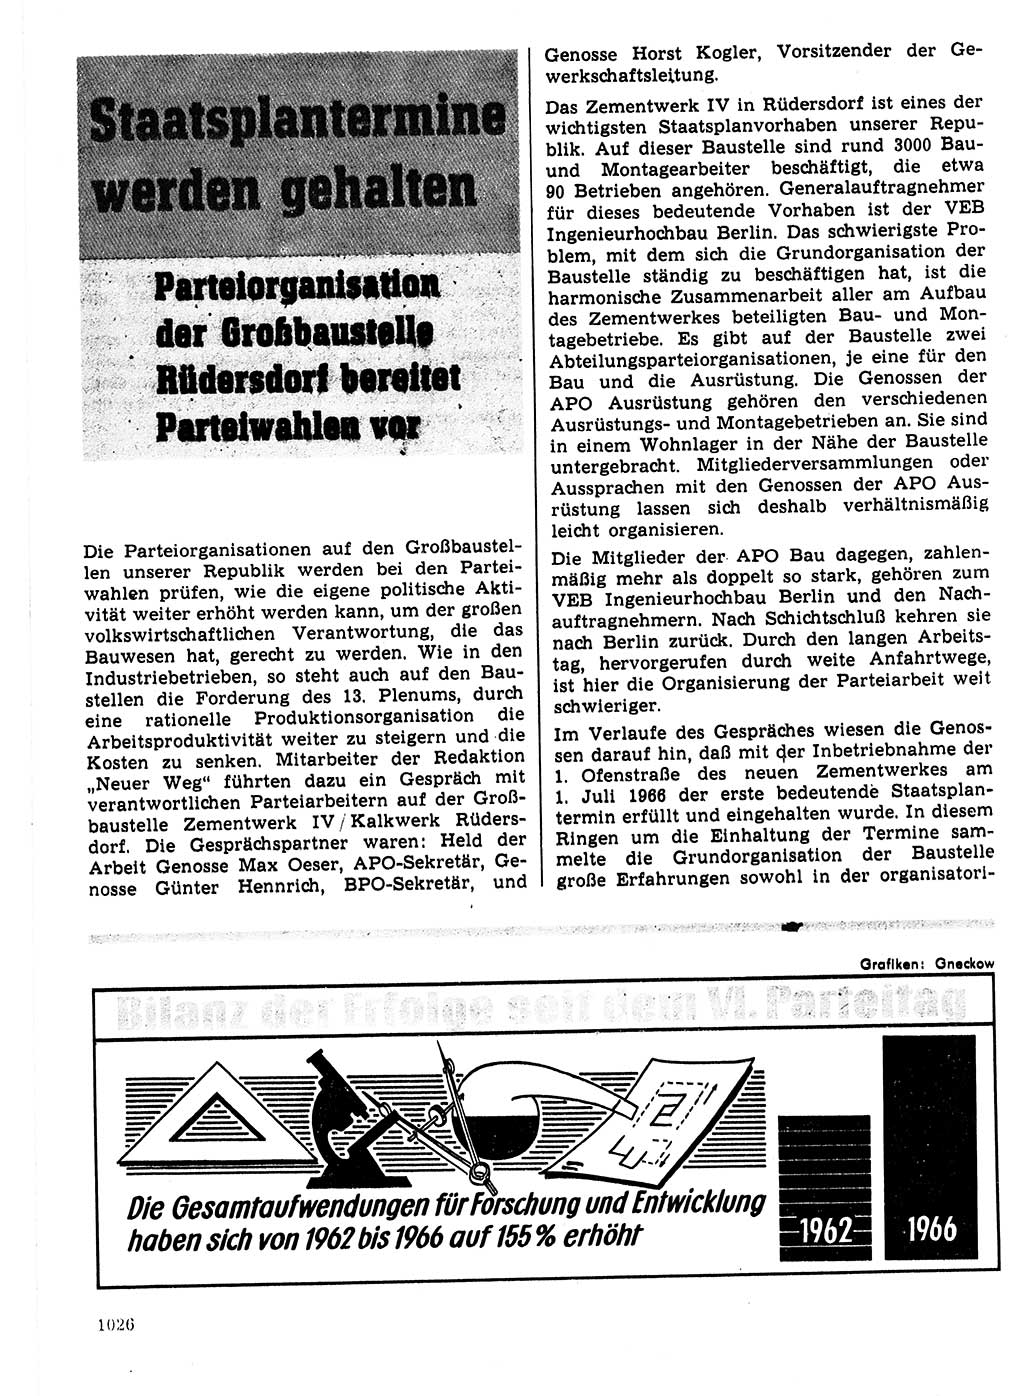 Neuer Weg (NW), Organ des Zentralkomitees (ZK) der SED (Sozialistische Einheitspartei Deutschlands) für Fragen des Parteilebens, 21. Jahrgang [Deutsche Demokratische Republik (DDR)] 1966, Seite 1026 (NW ZK SED DDR 1966, S. 1026)